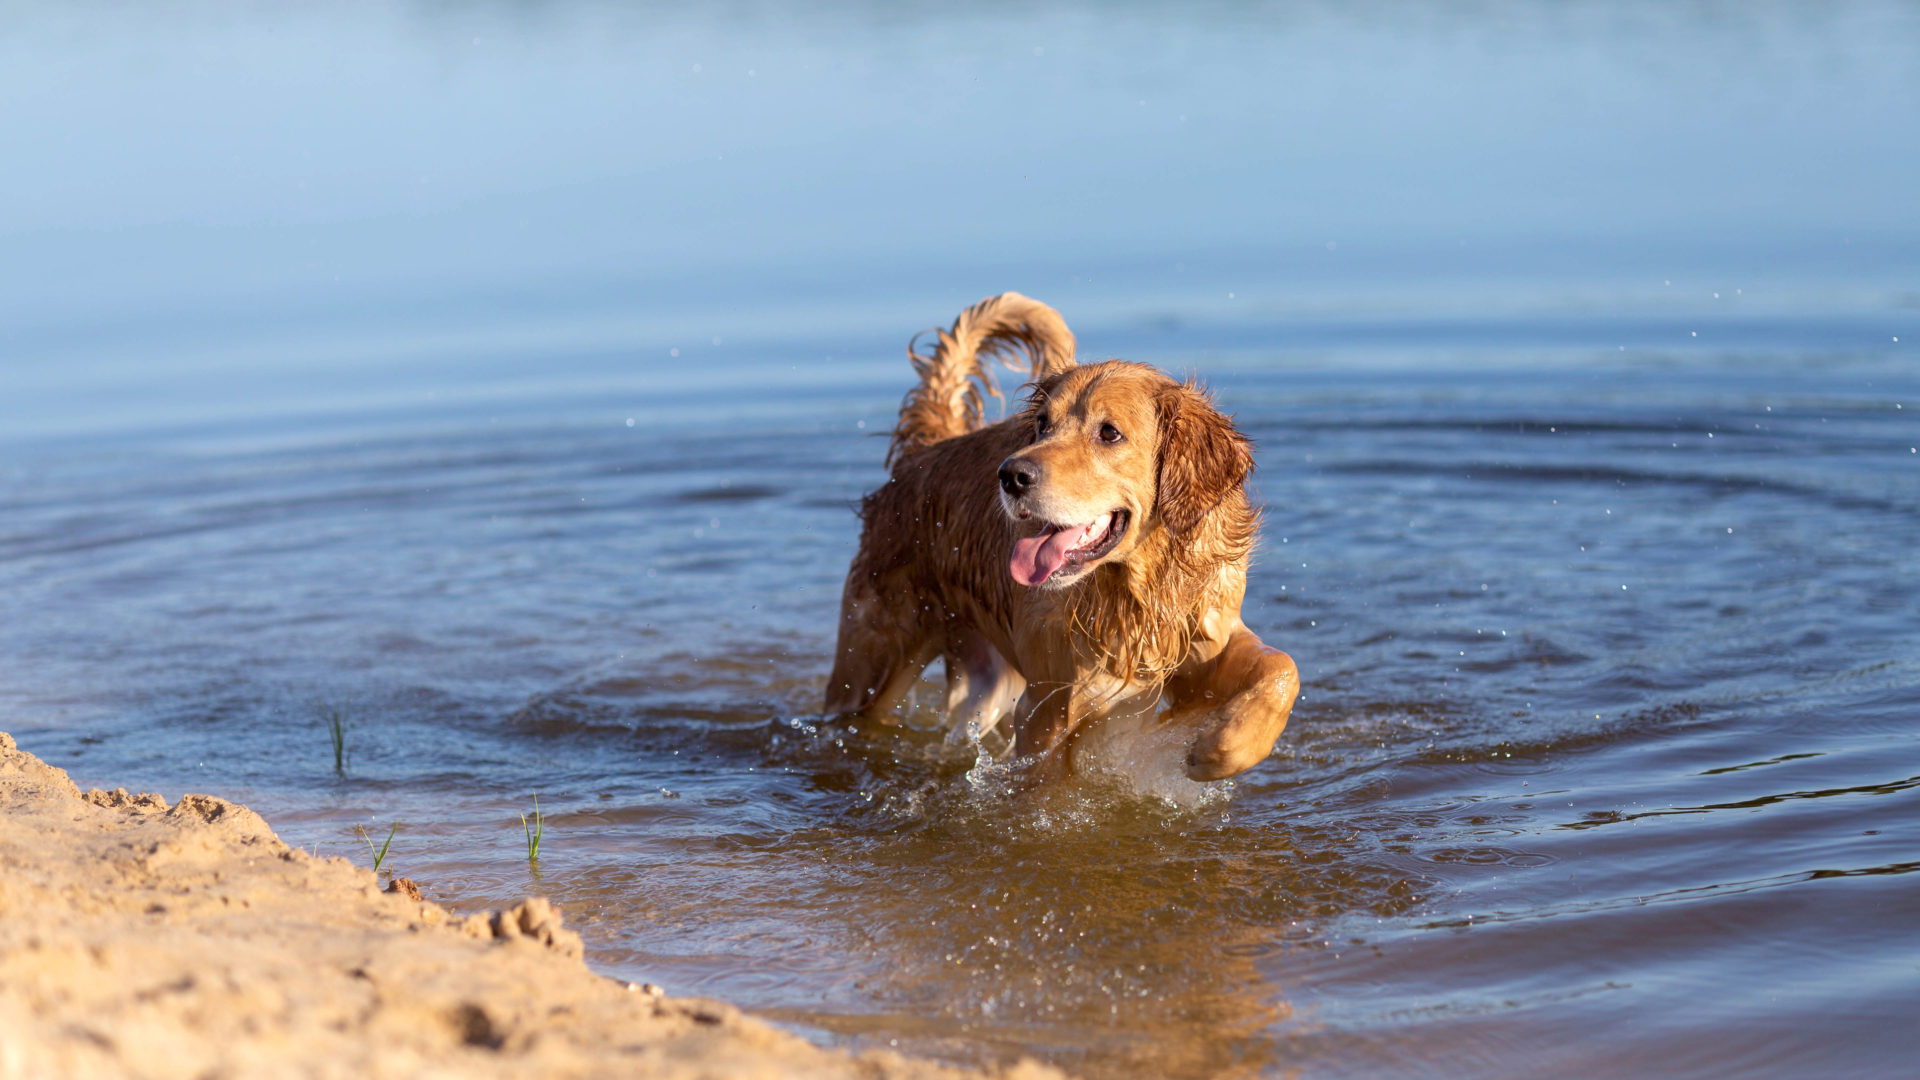 Uiminen helpottaa koiran oloa helteellä.